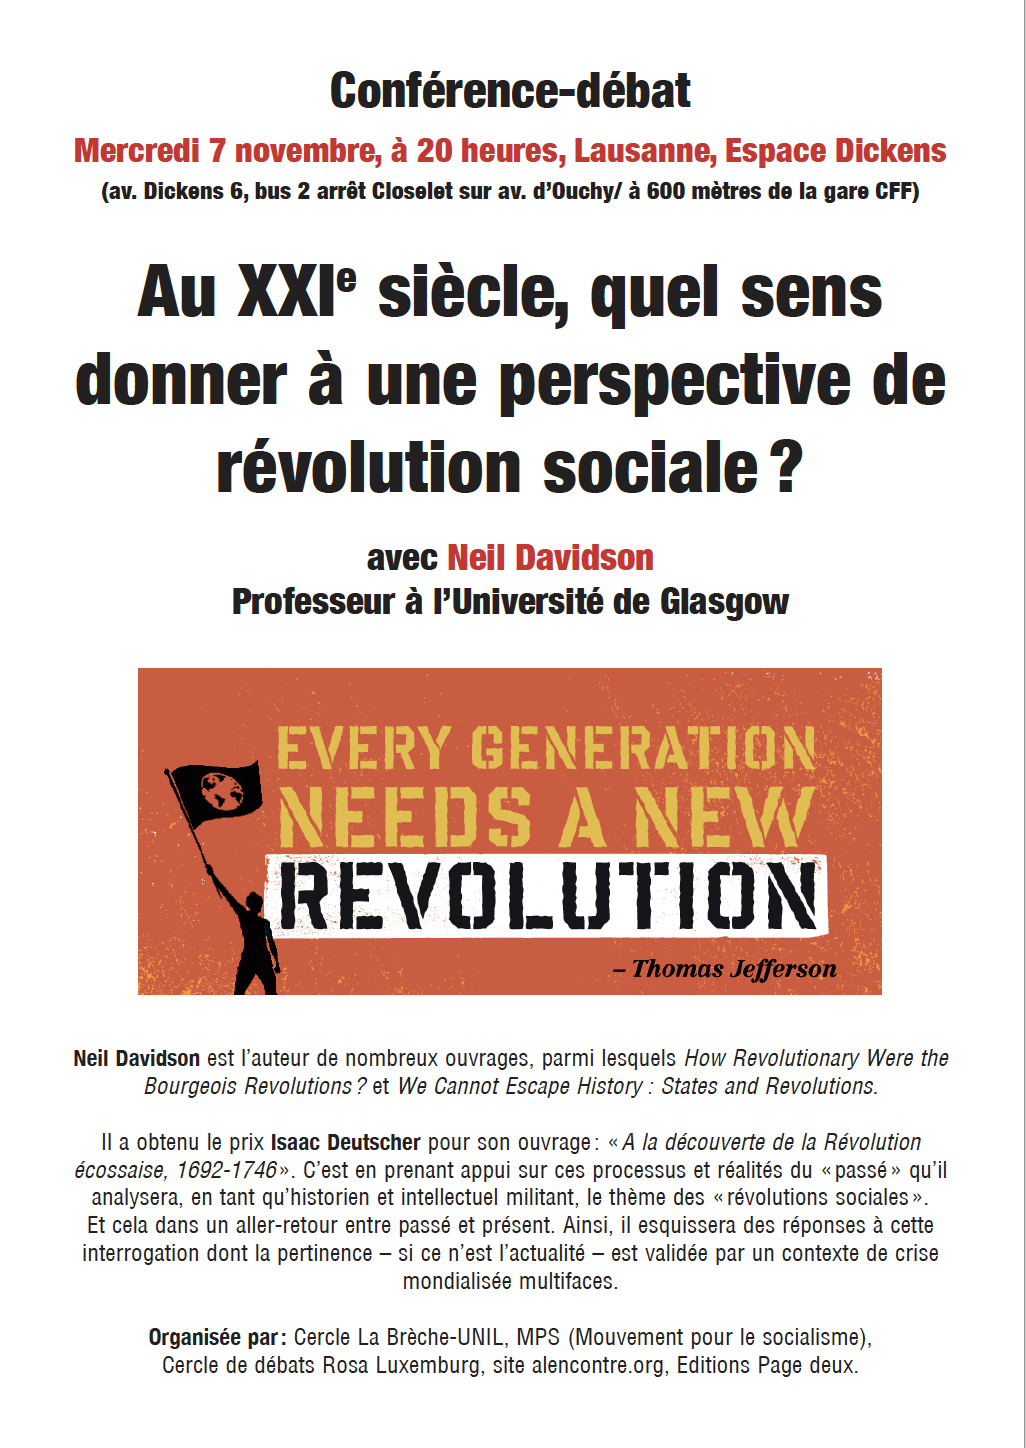 Conférence-débat avec Neil Davidson, Université de Glasgow: «Au XXIe siècle, quel sens donner à une perspective de révolution sociale?» - Mercredi 7 novembre, 20h, Lausanne, Espace Dickens